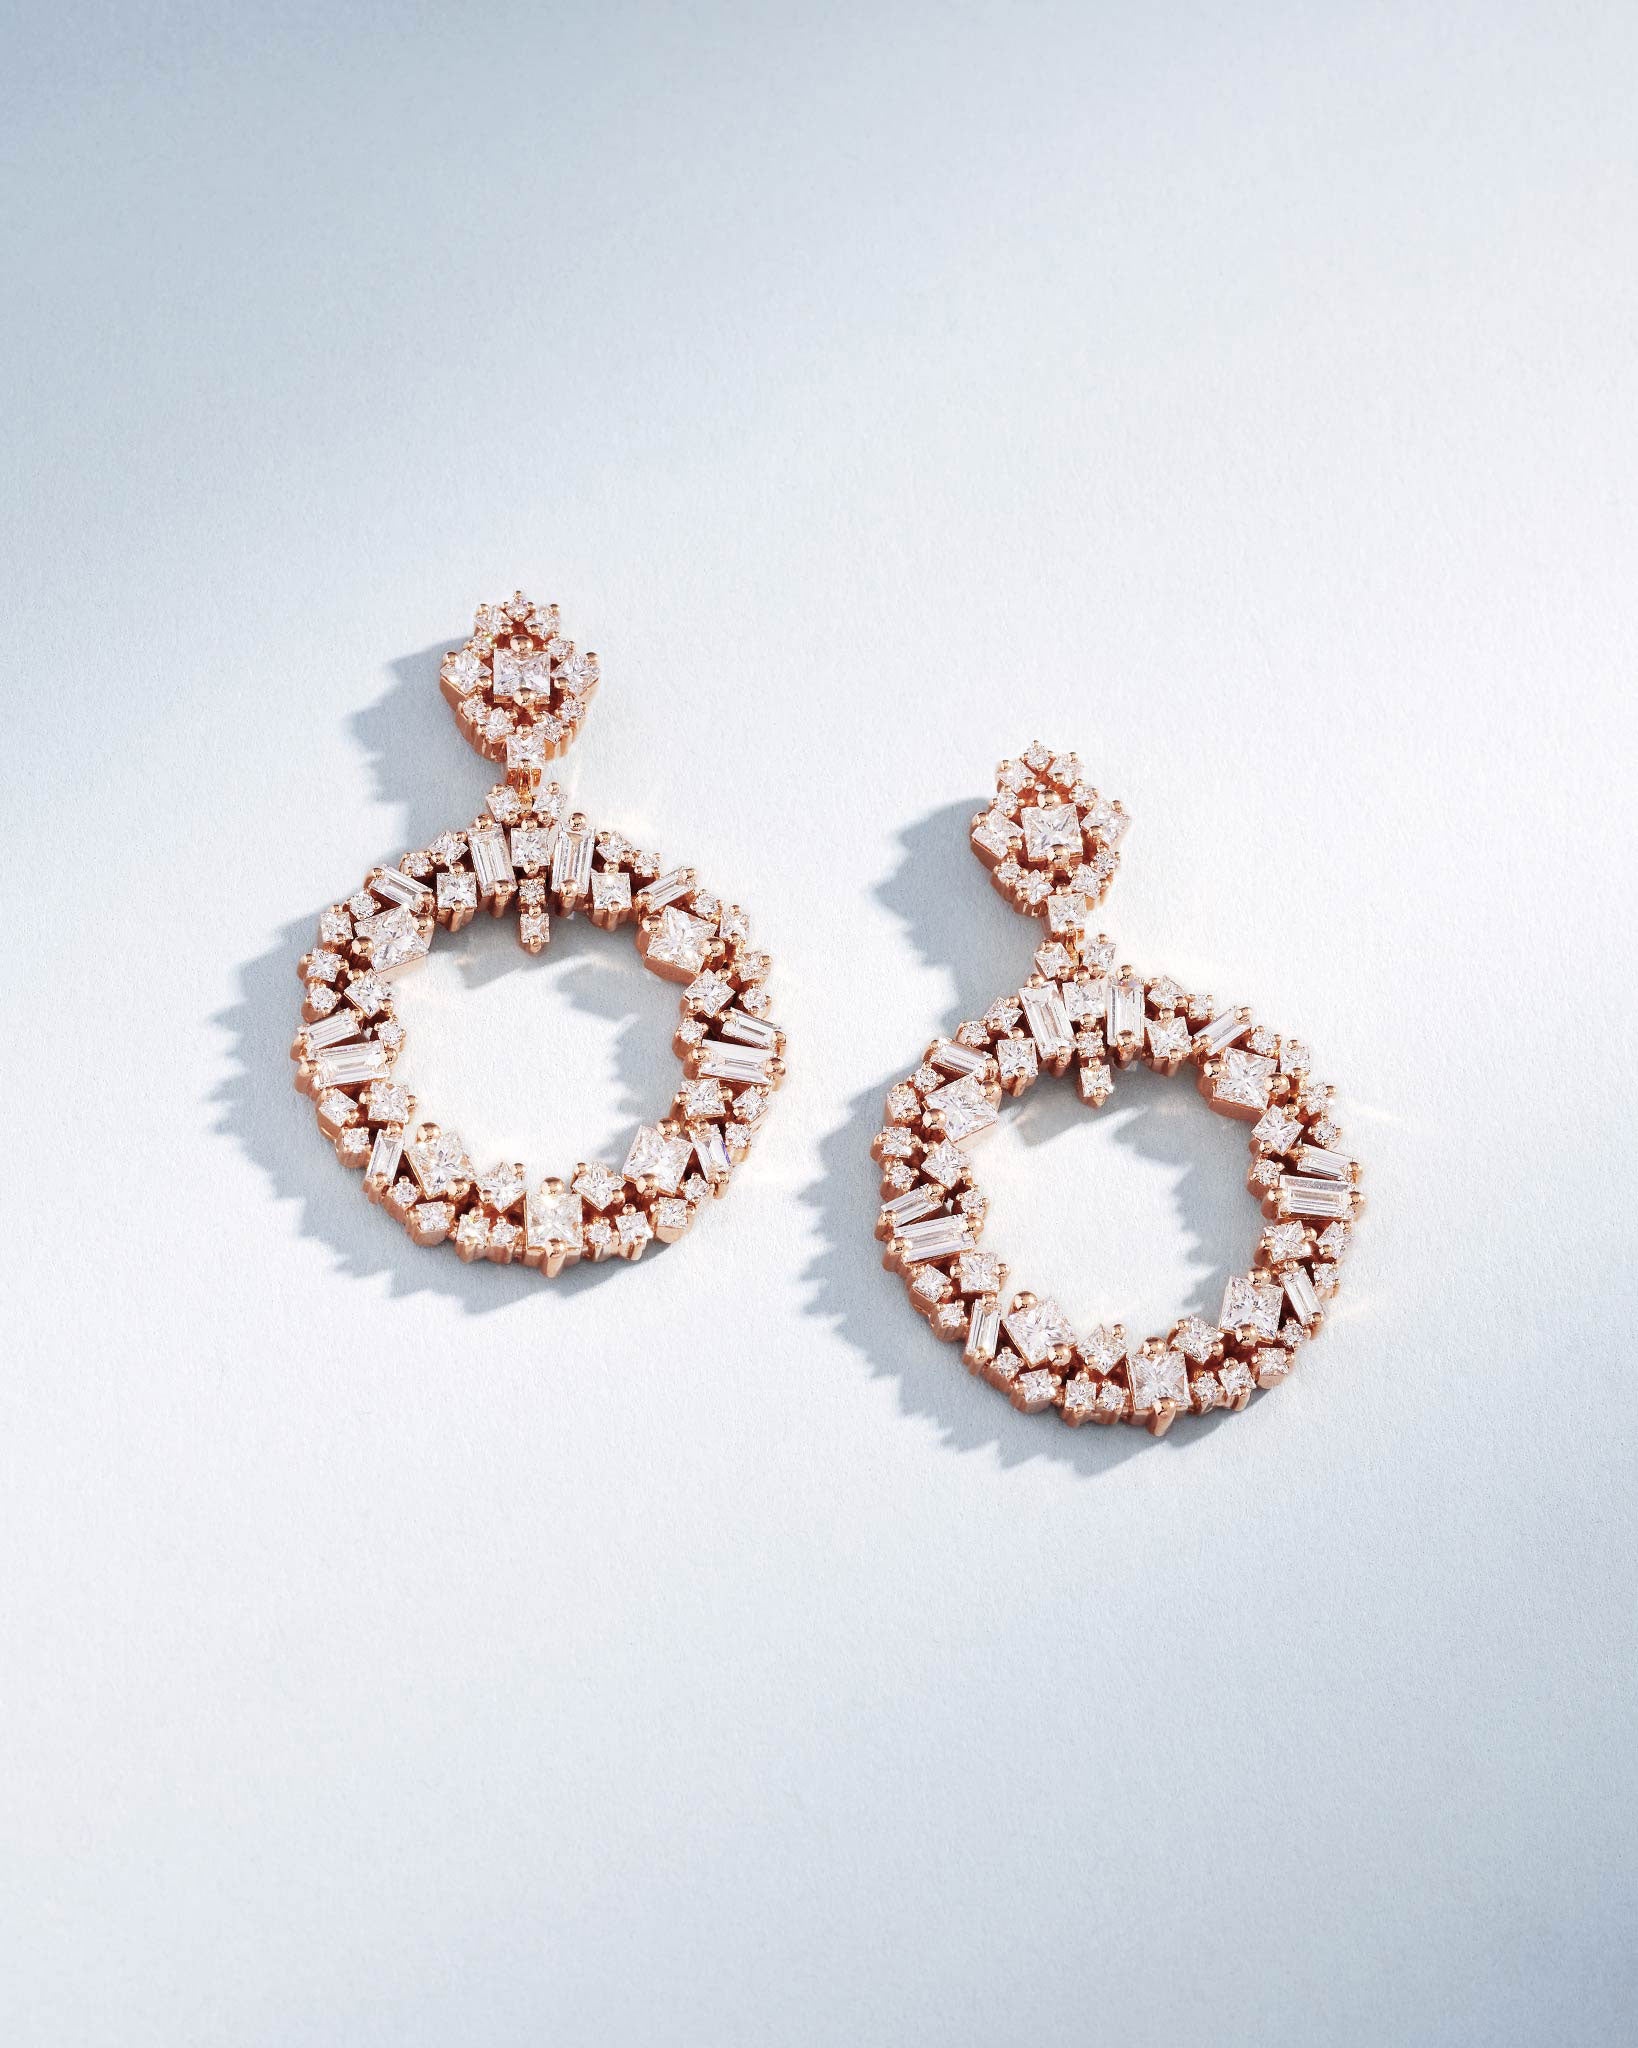 Suzanne Kalan La Fantaisie Eclipse Diamond Drop Earrings in 18k rose gold